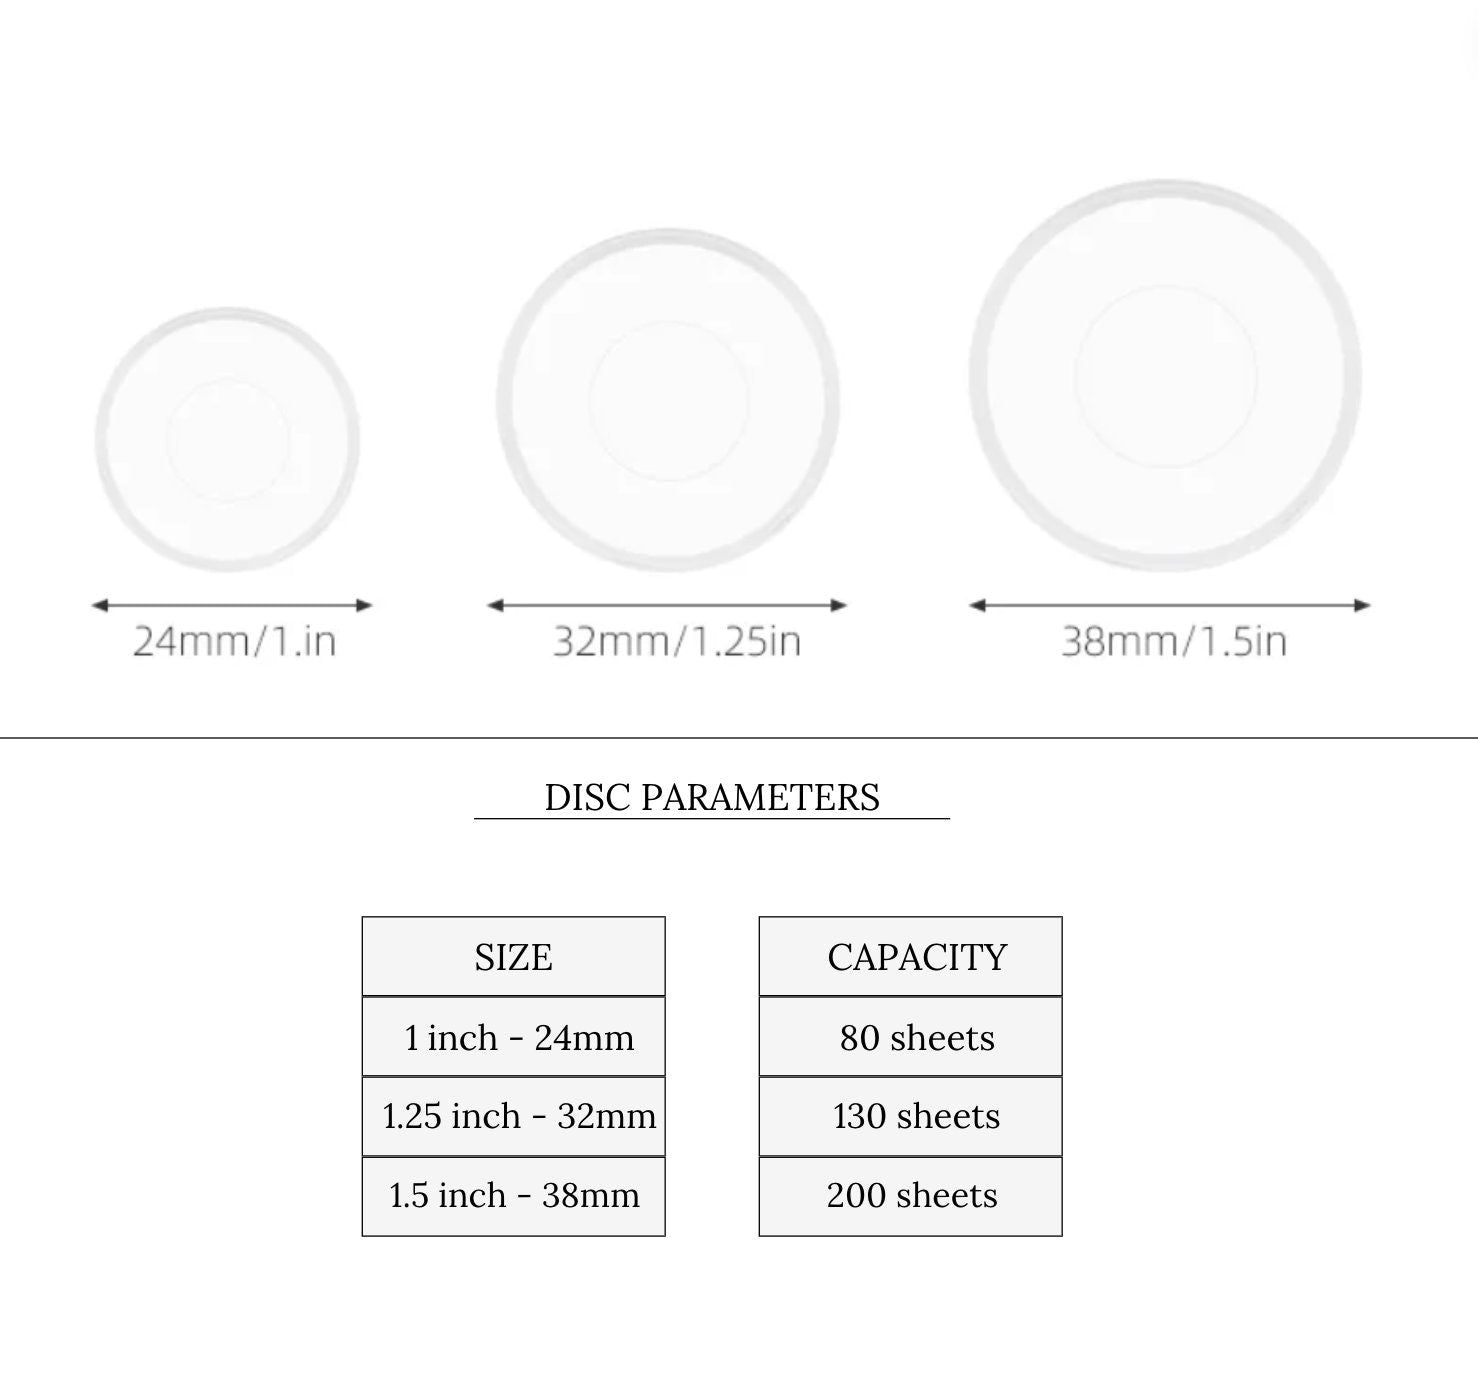 CLEAR Planner Discs || 11 Discs, Discbound, 1.5 inch, 1.25 inch, 1 inch